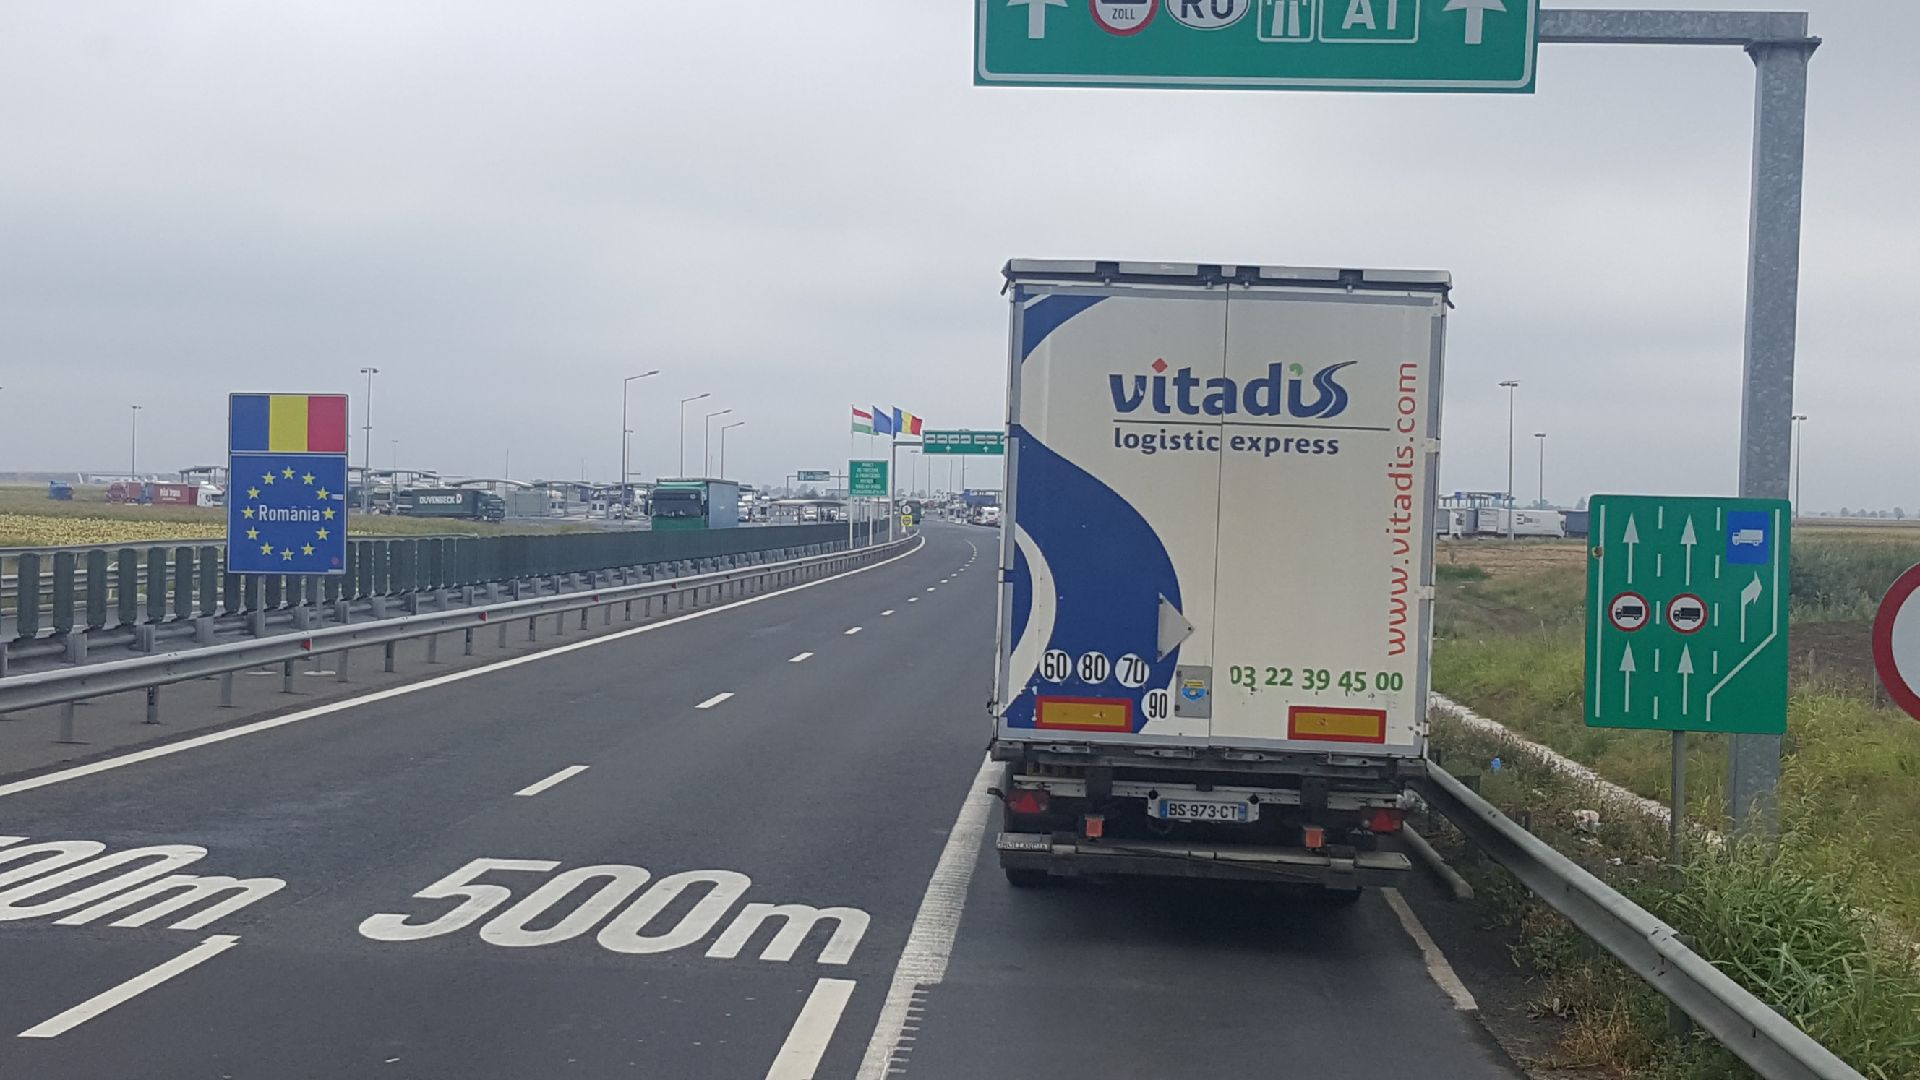 Vitadis transport routier depuis l Allemagne vers la Roumanie